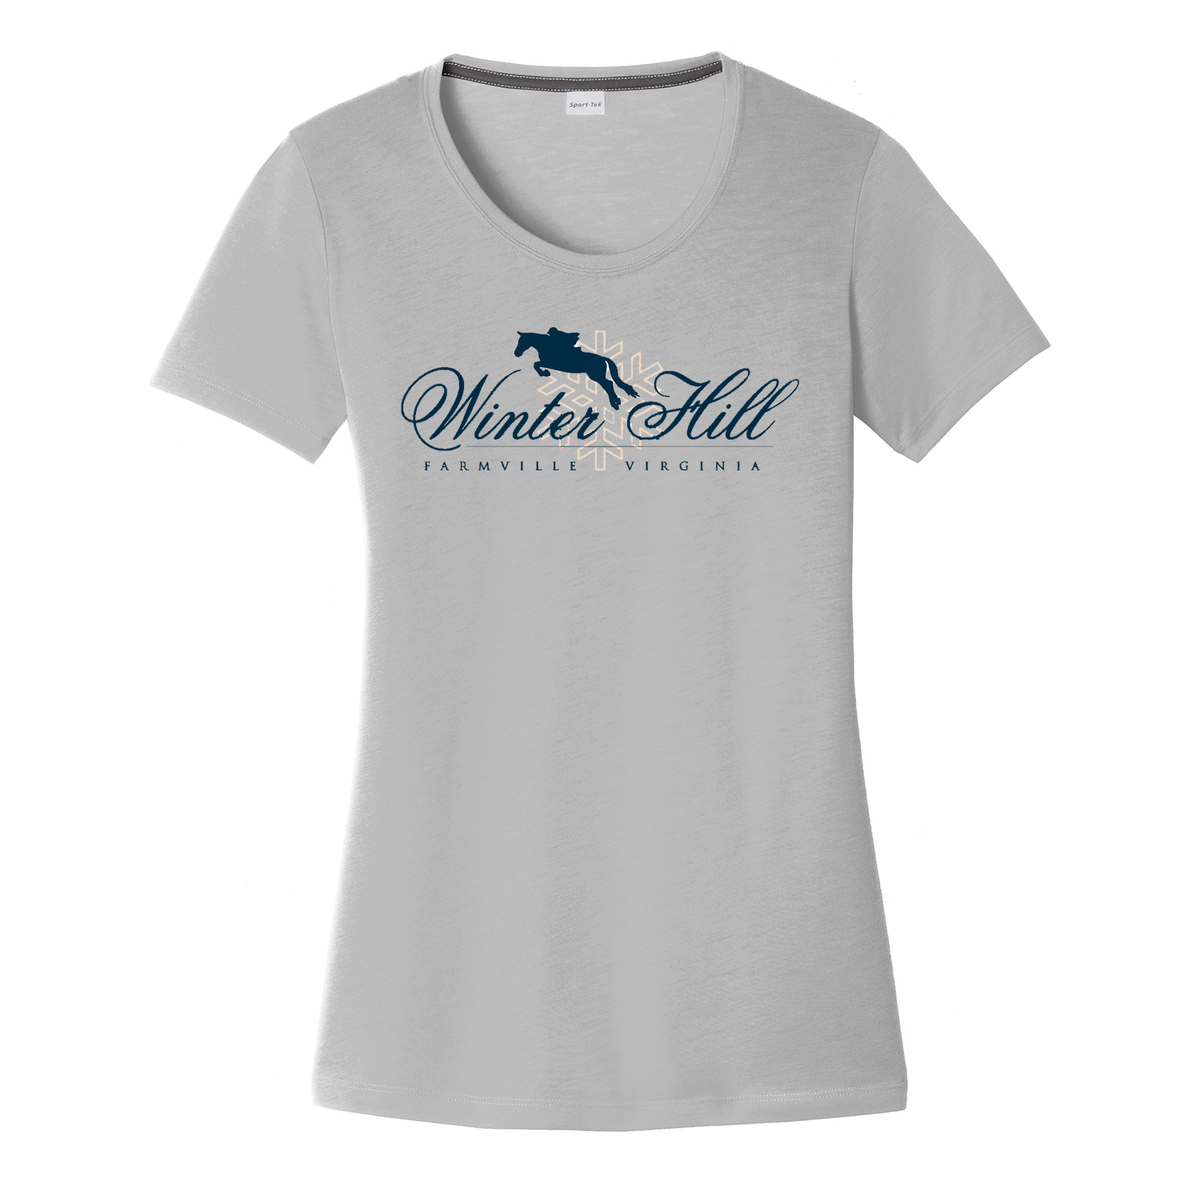 Winterhill Farm Women's CottonTouch Performance T-Shirt